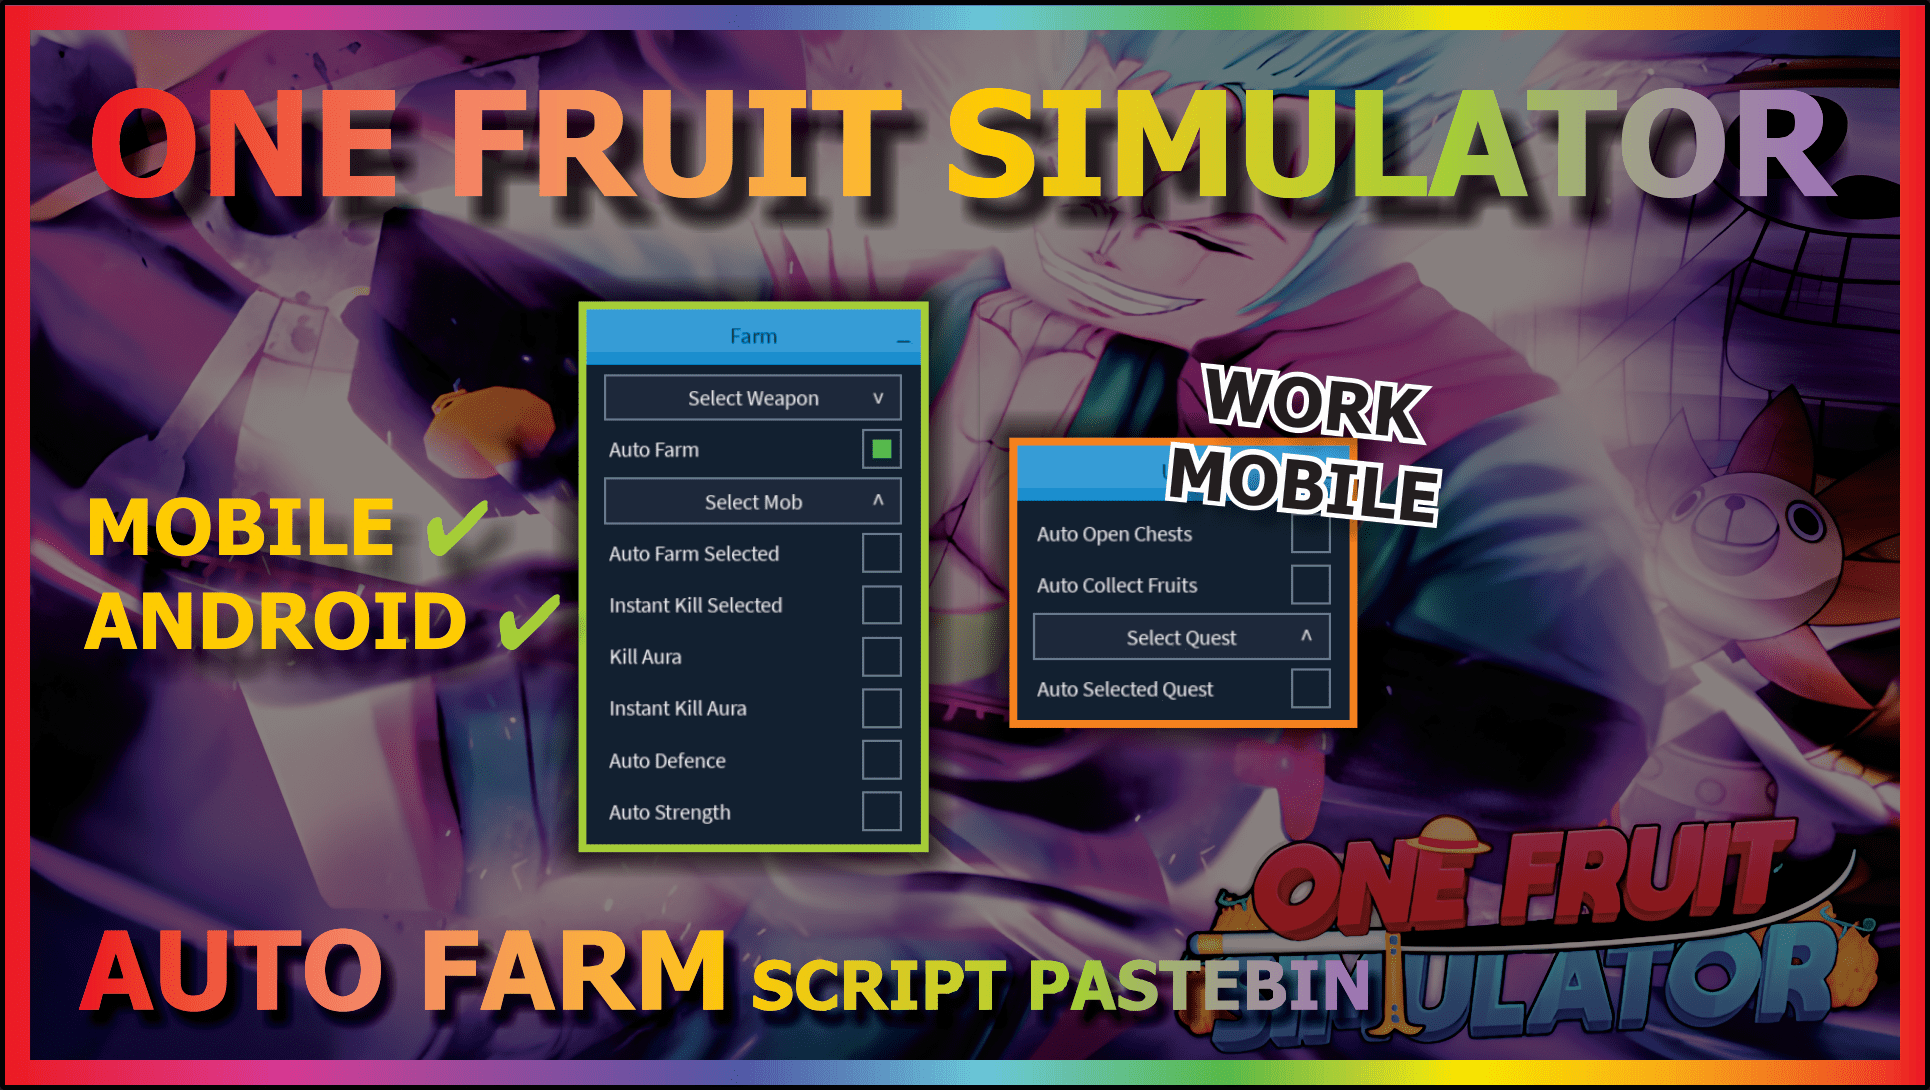 One Fruit Simulator: Auto Farm, Auto Open Chests, Auto Collect